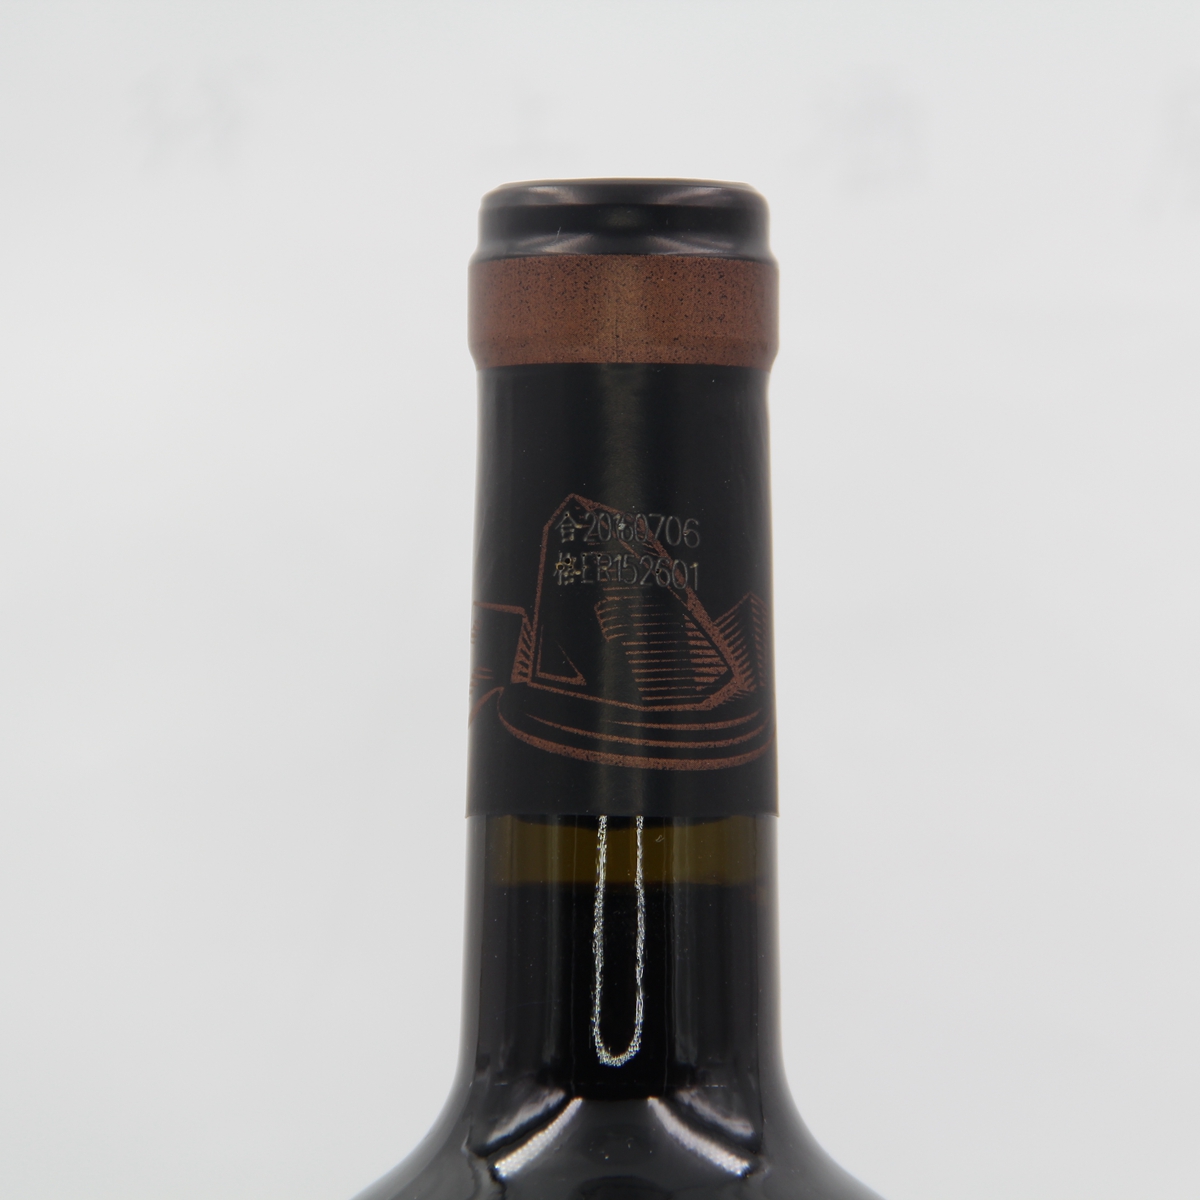 中国新疆产区沙地酒庄 赤霞珠152-9窖藏干红葡萄酒